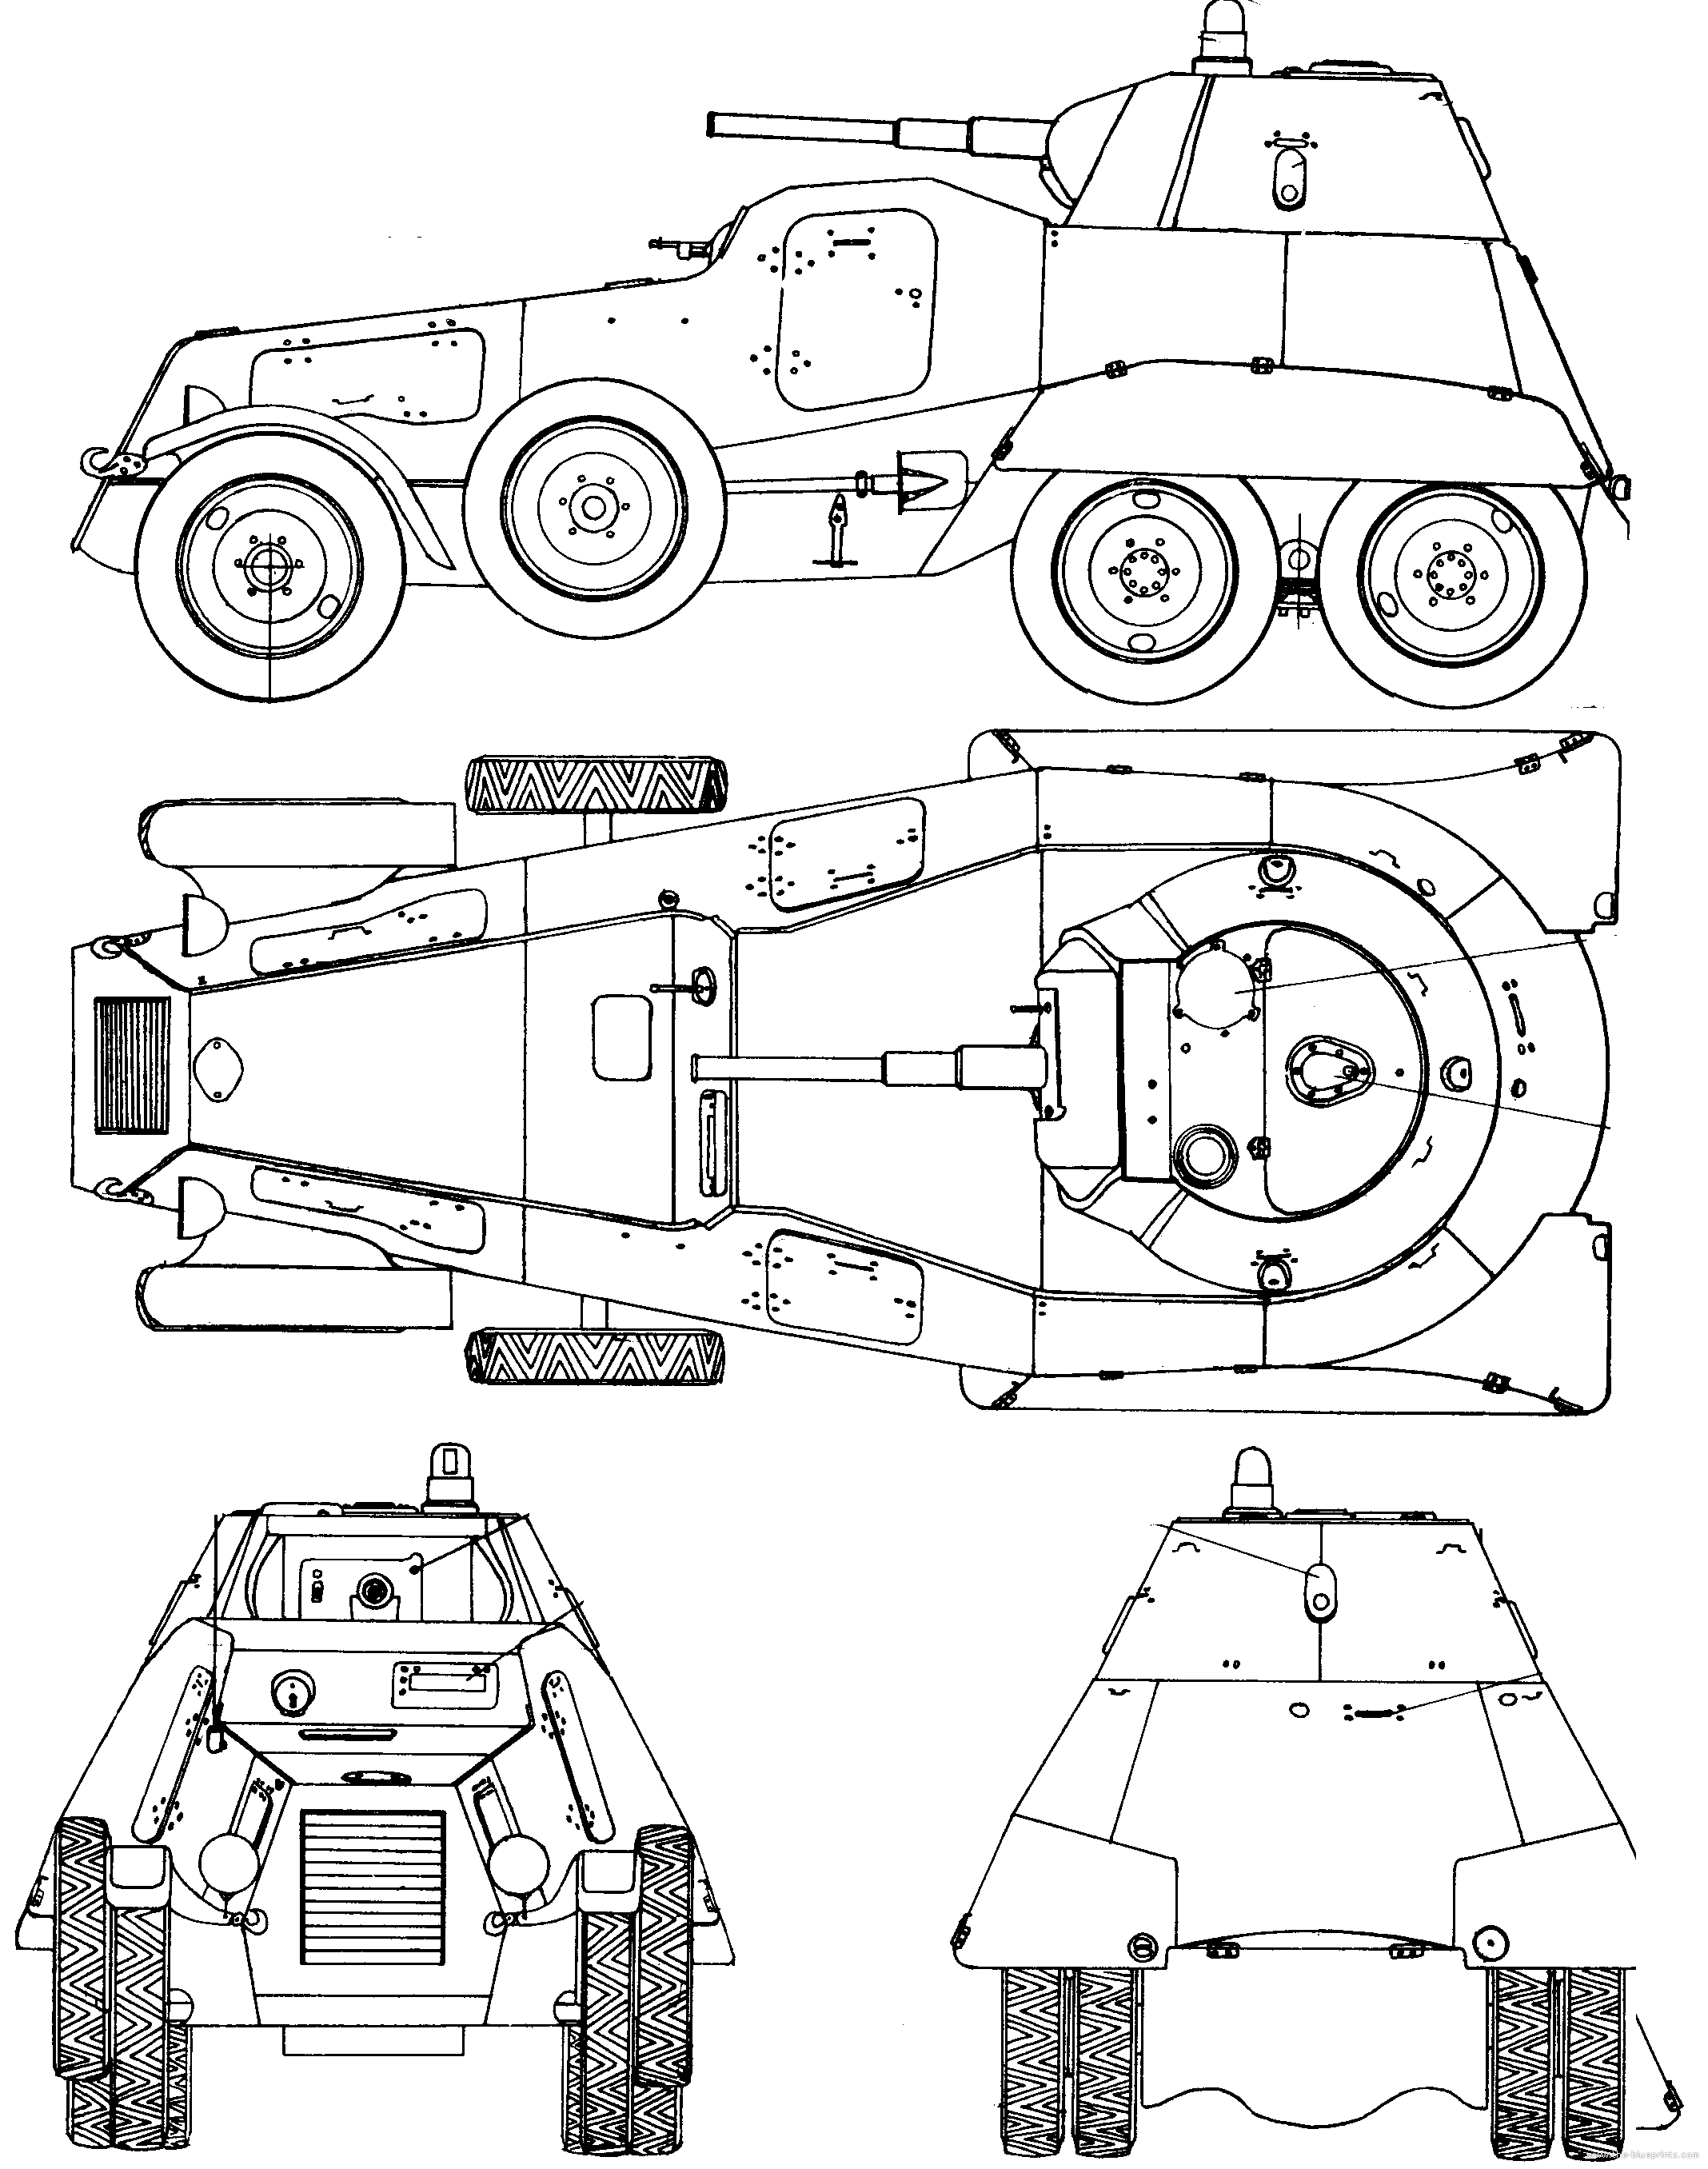 Бронеавтомобили семейства ба – средний бронеавтомобиль – ба-10